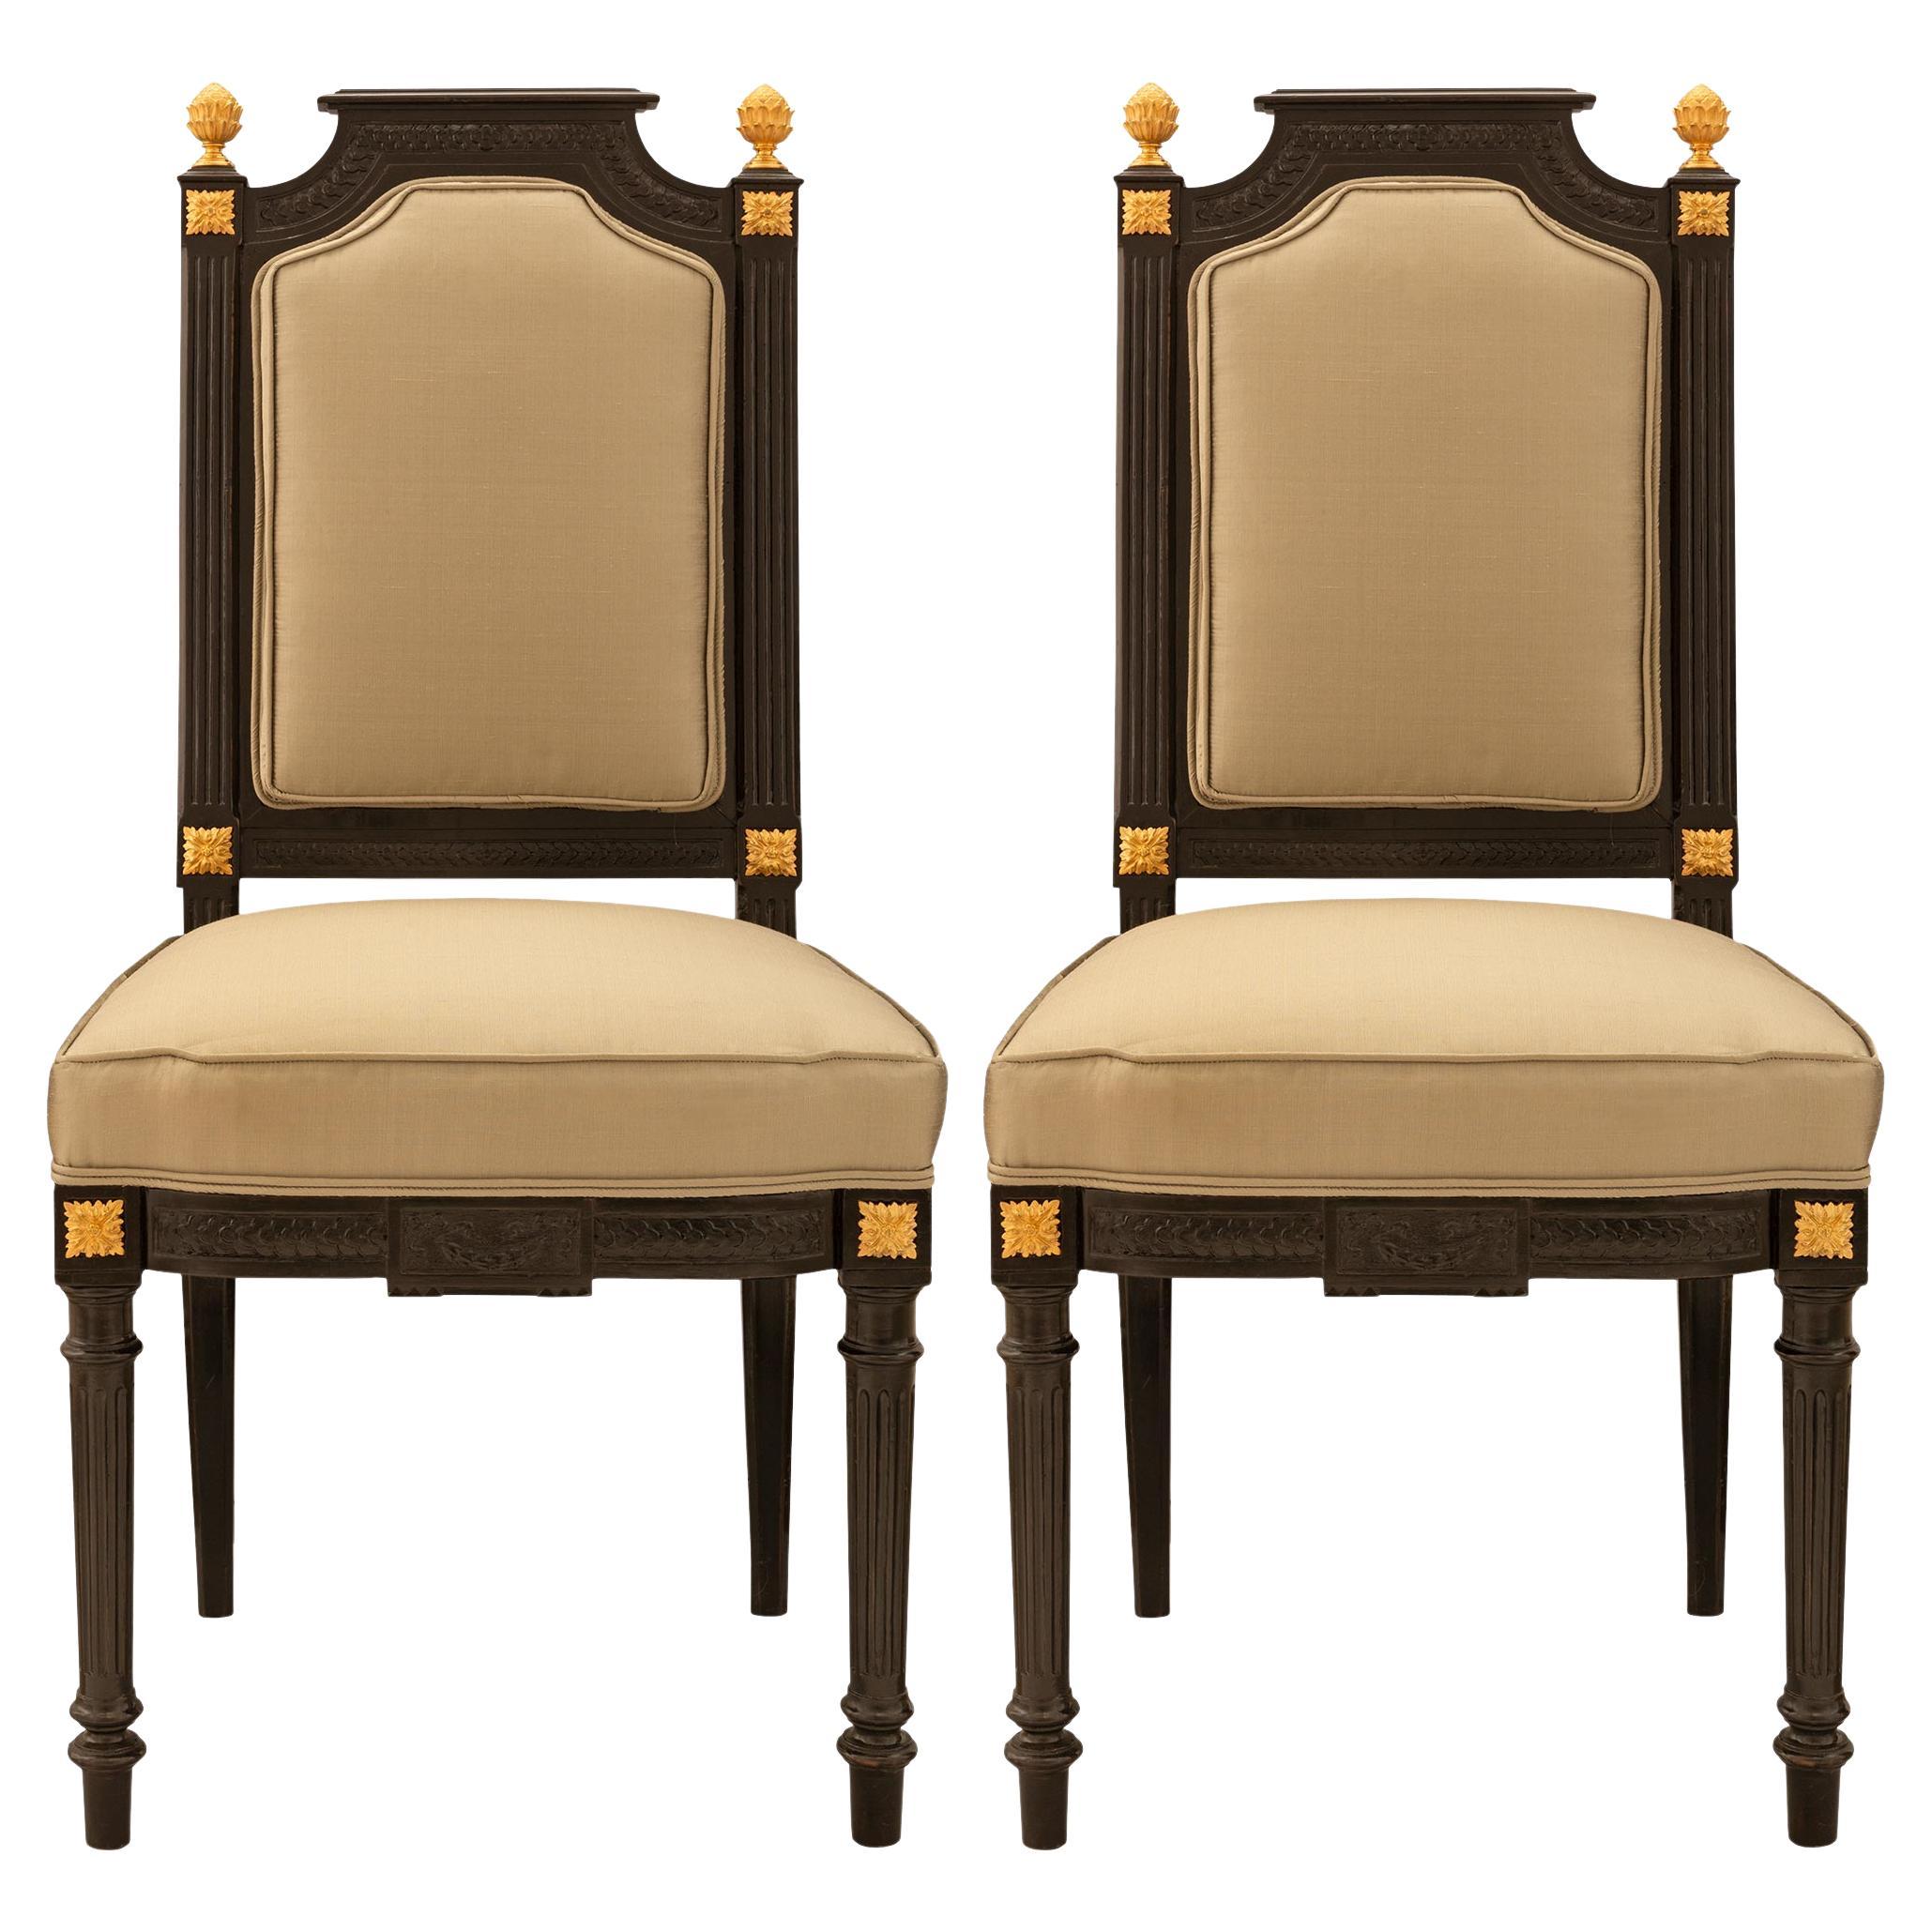 Paar französische Beistellstühle im Louis-XVI-Stil aus der Zeit Napoleons III. des 19. Jahrhunderts